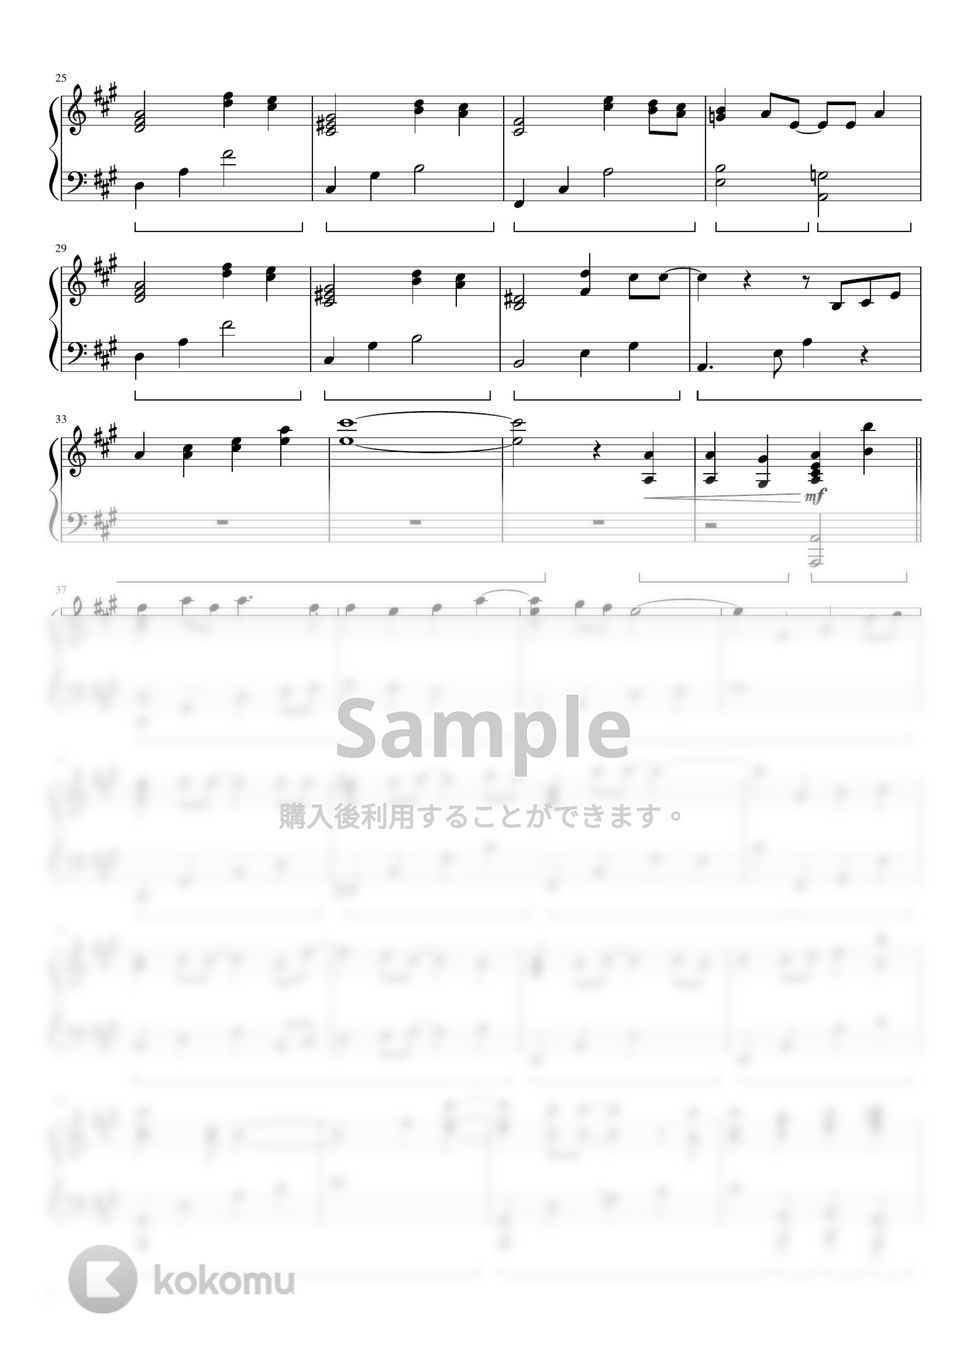 Official髭男dism - I LOVE...(サントラピアノバージョン) (ドラマ「恋はつづくよどこまでも」) by ちゃんRINA。